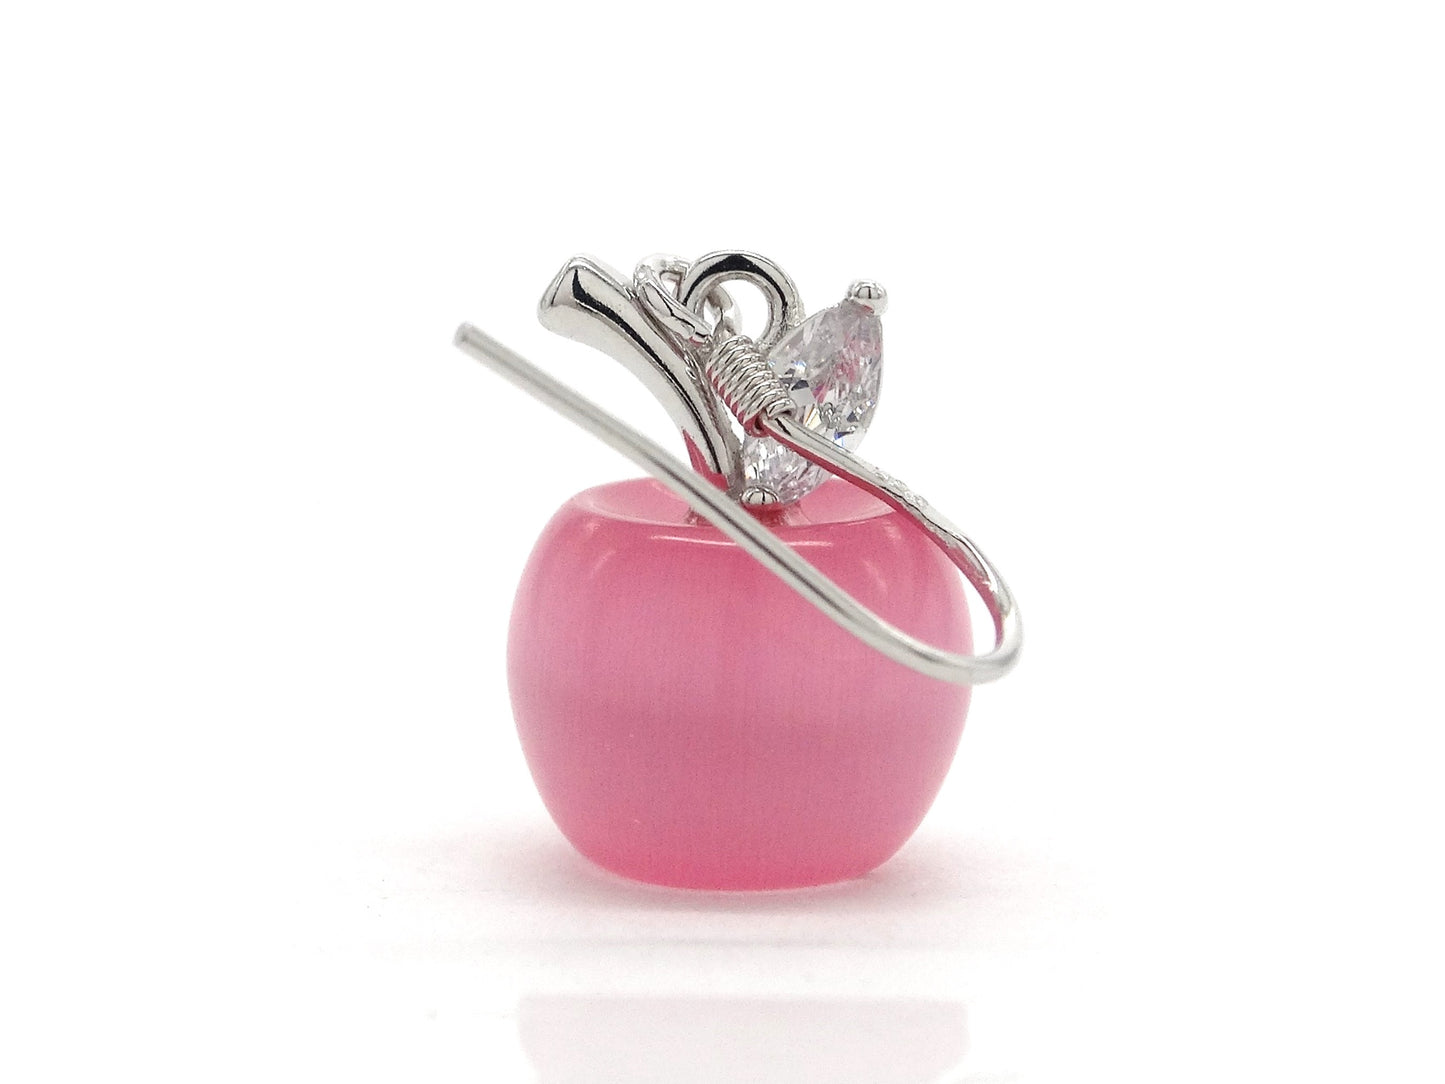 Pink apple earrings FRONT